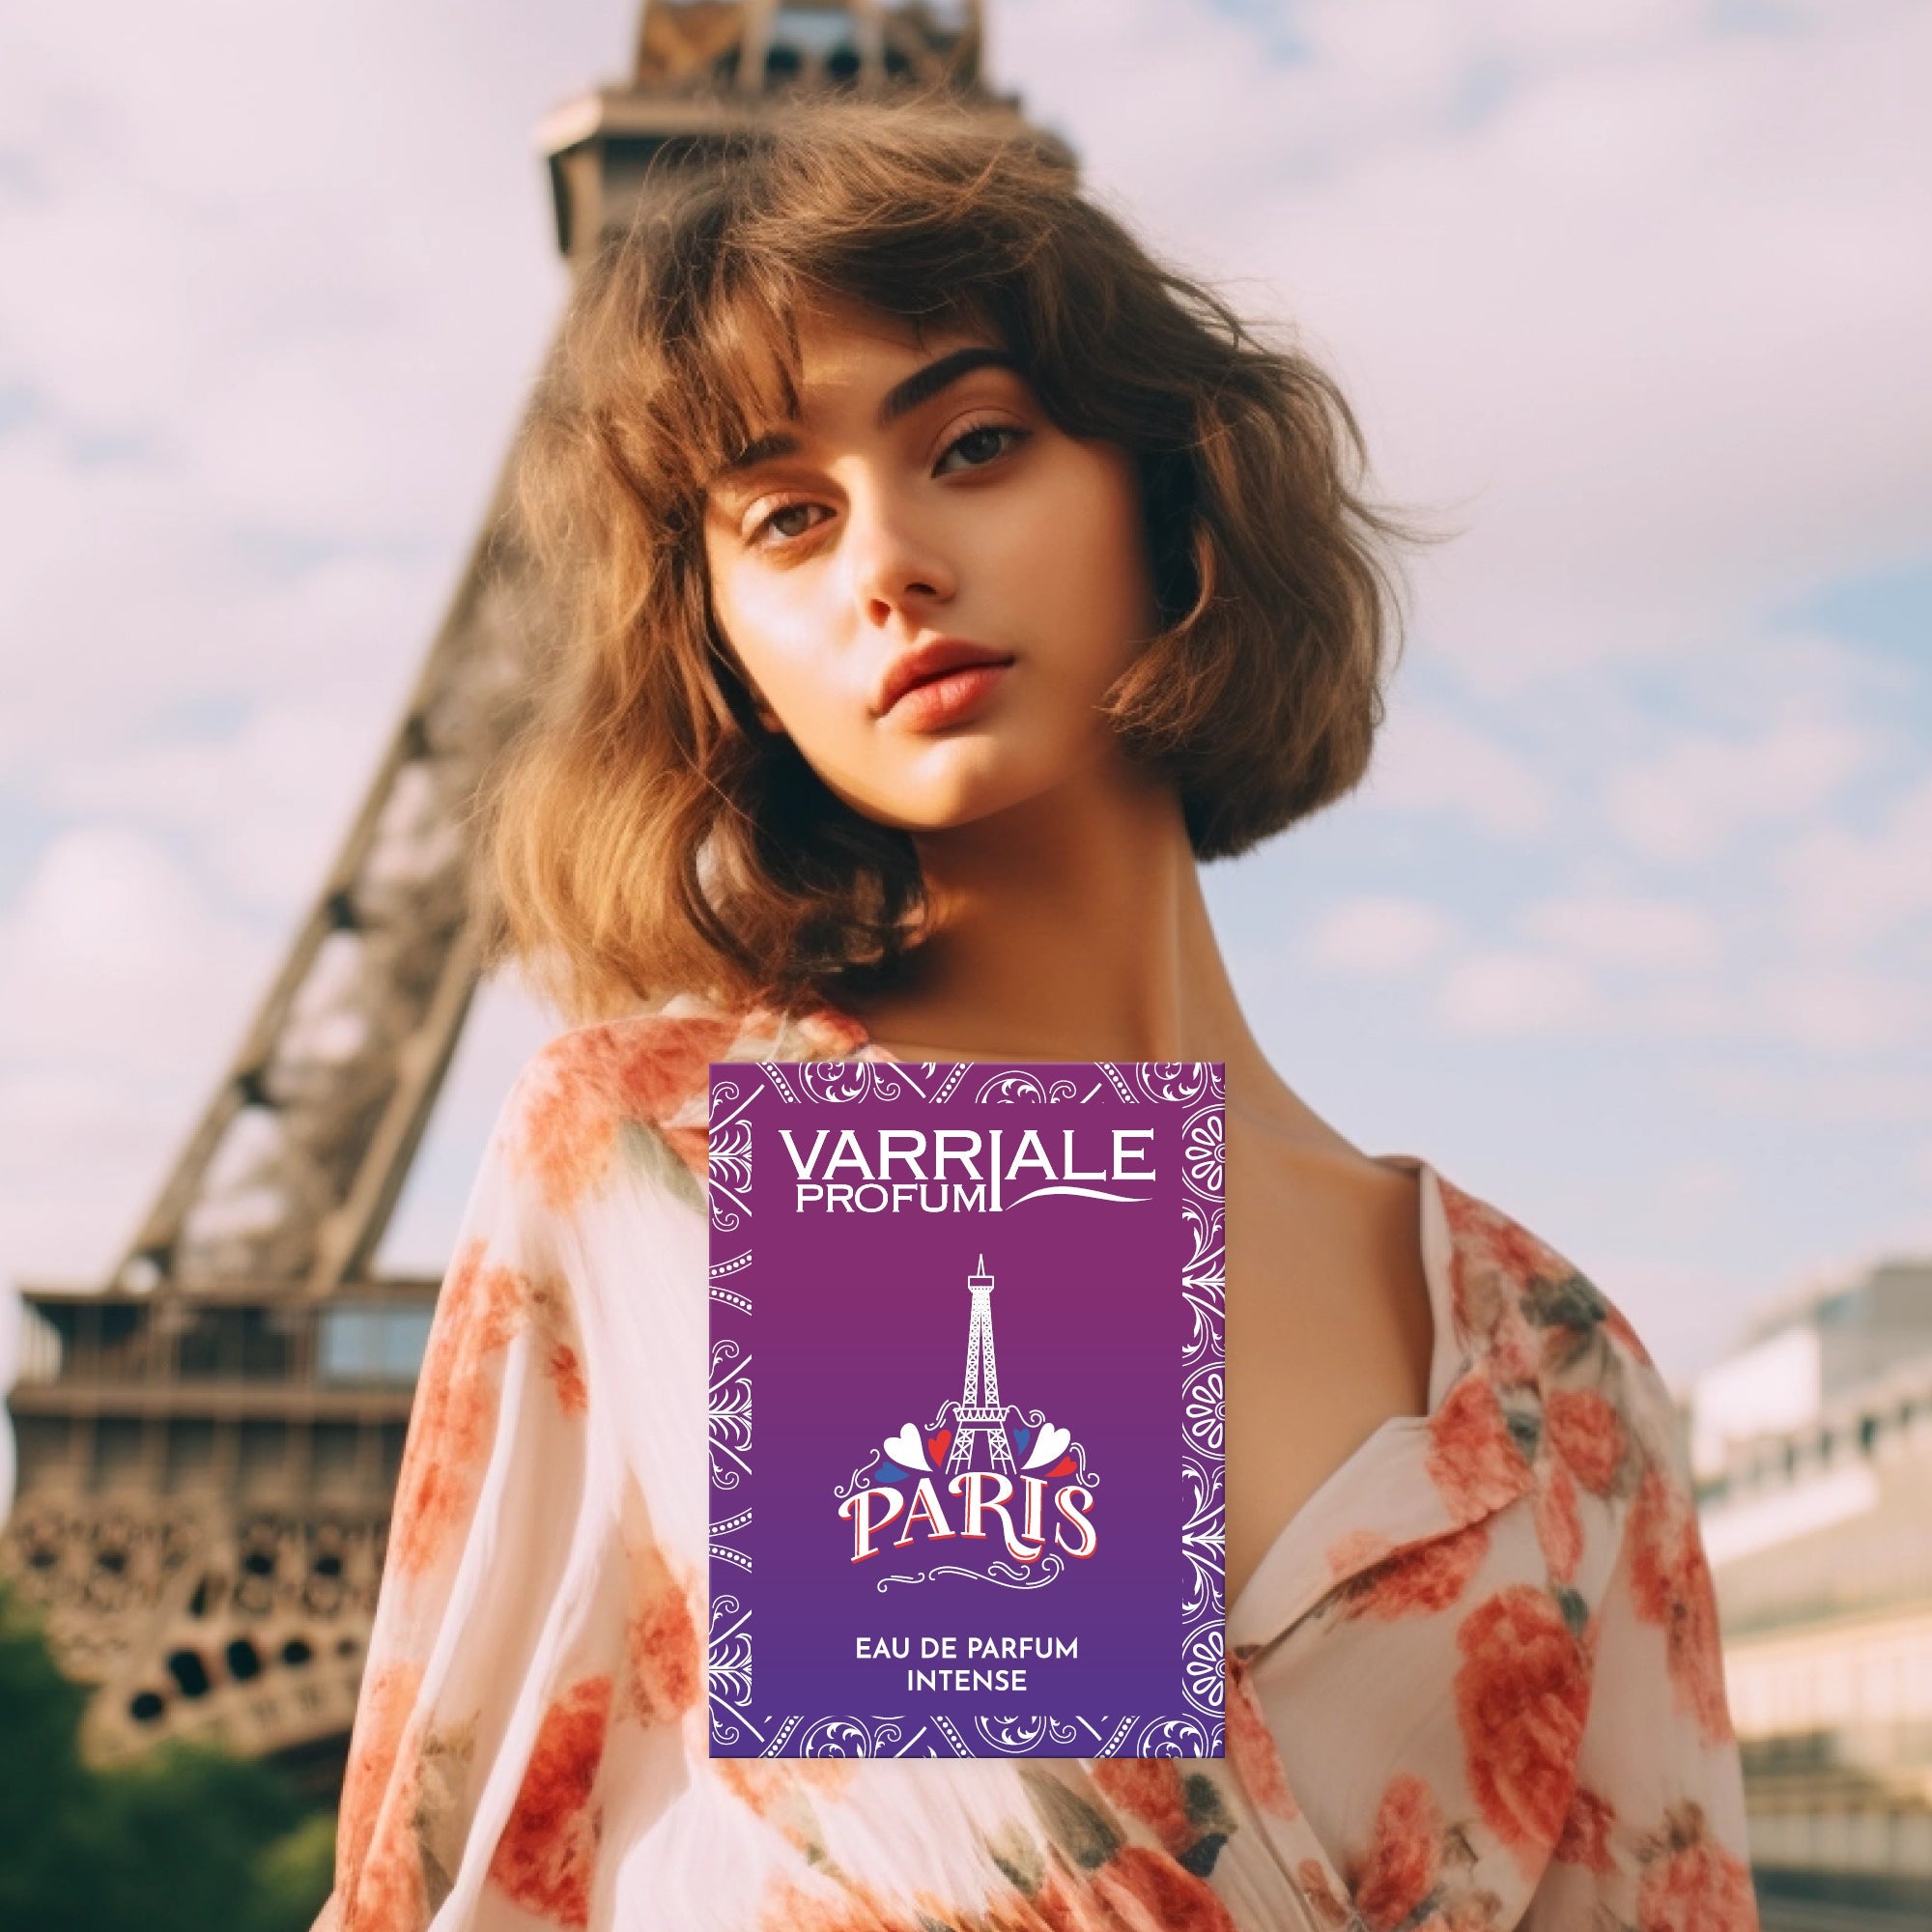 Paris - Varriale Profumi®